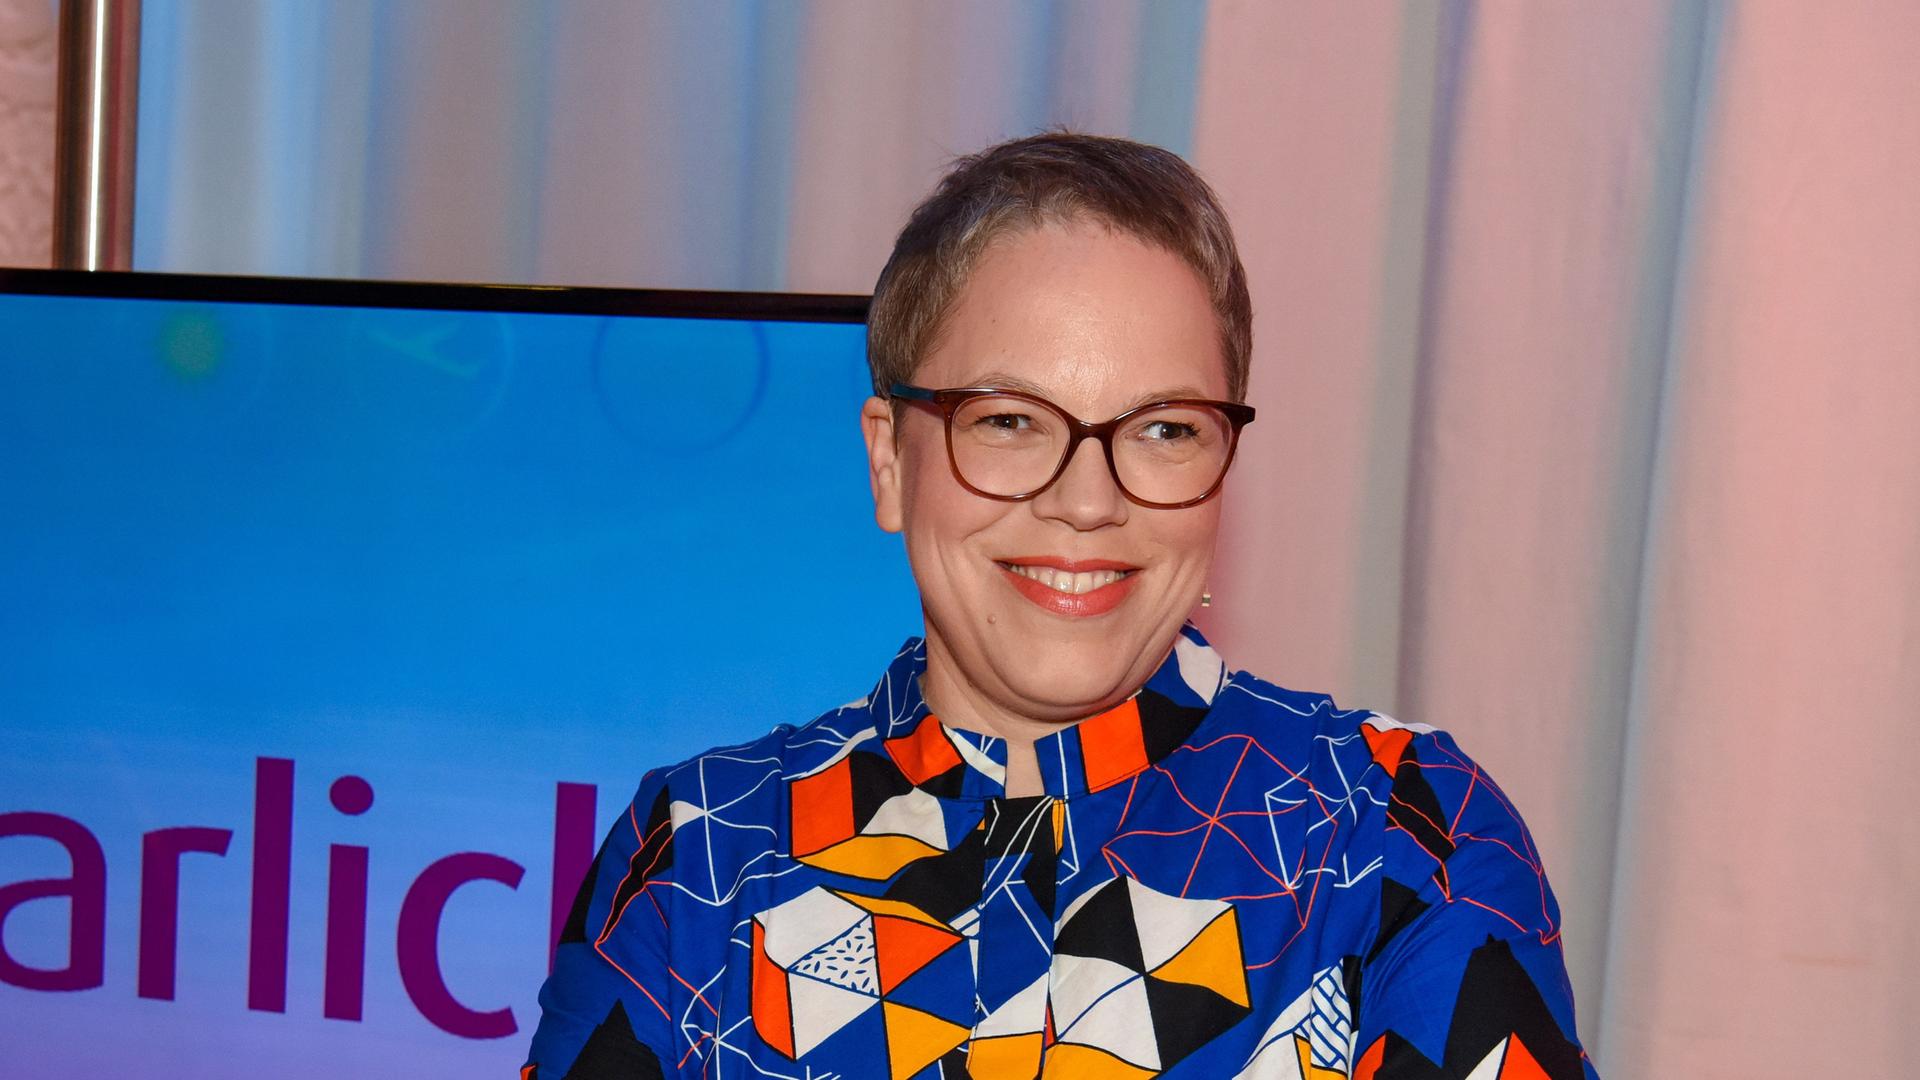 Die Journalistin und Kochbuch-Autorin Katharina Seiser im Jahr 2021 in der Kulisse von "Die Barbara Karlich Show". Sie trägt ein blau-bunt gemustertes Hemd.